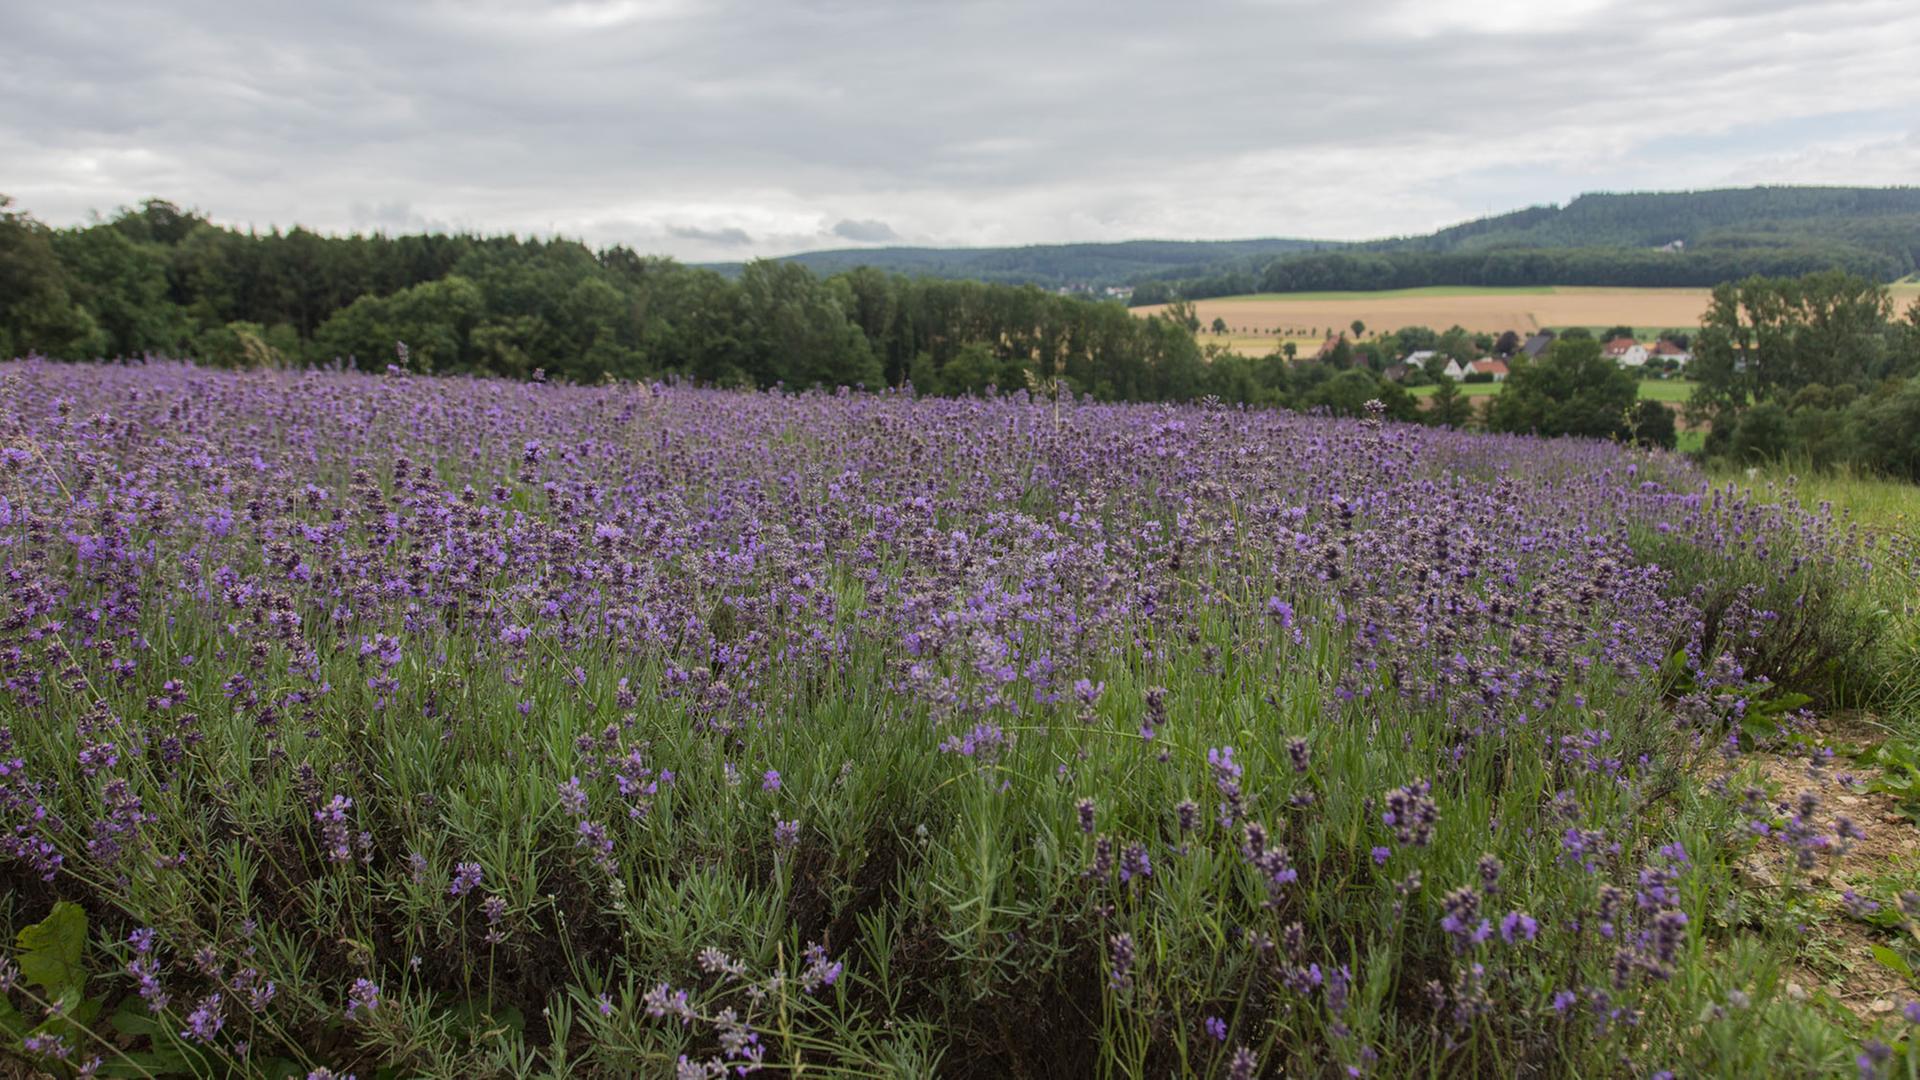 Blick über ein Lavendelfeld im lippischen Hügelland